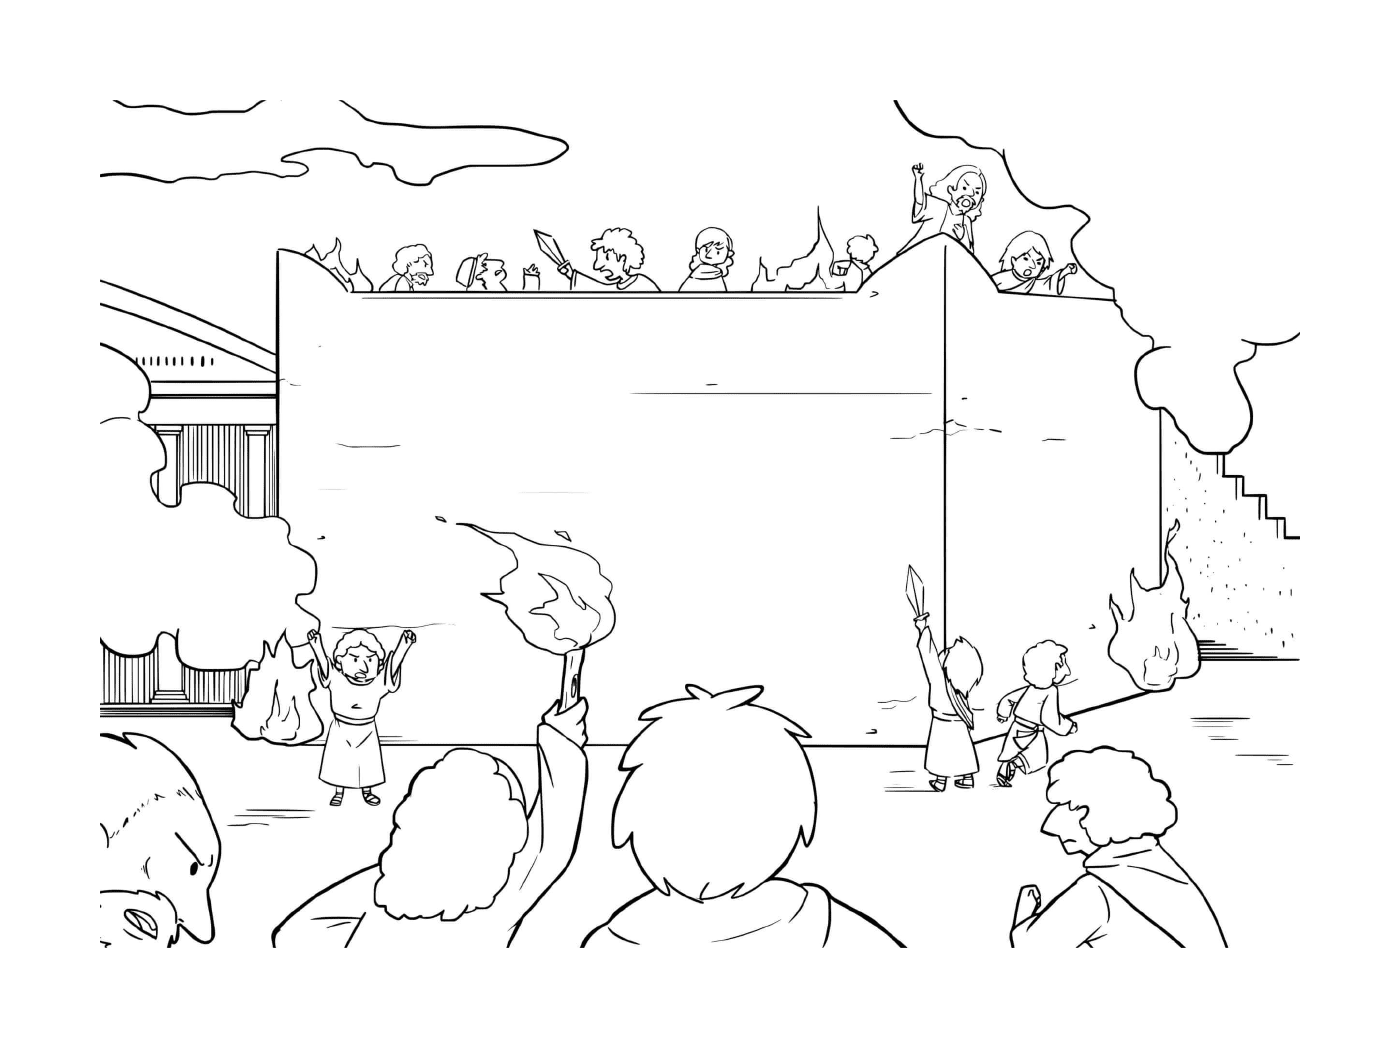   Groupe de personnes debout devant un grand écran 